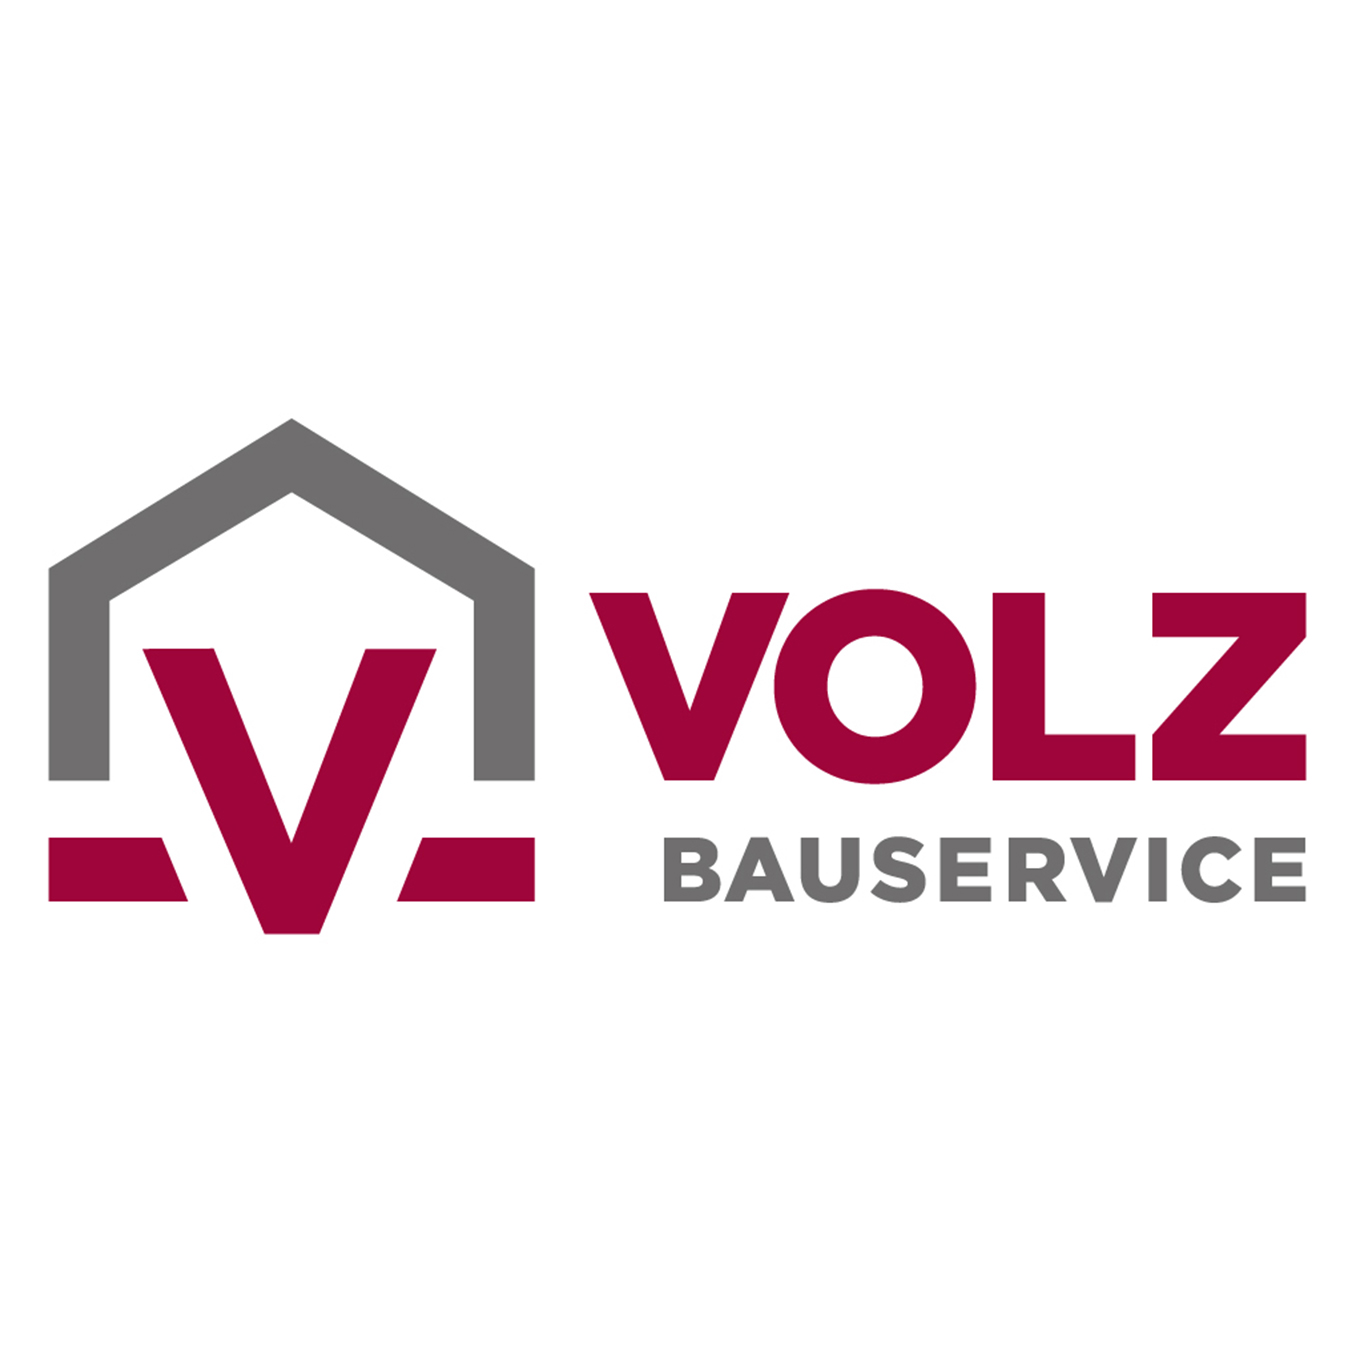 Logo VOLZ Bauservice mit roter und grauer Schrift auf weissem Hintergrund